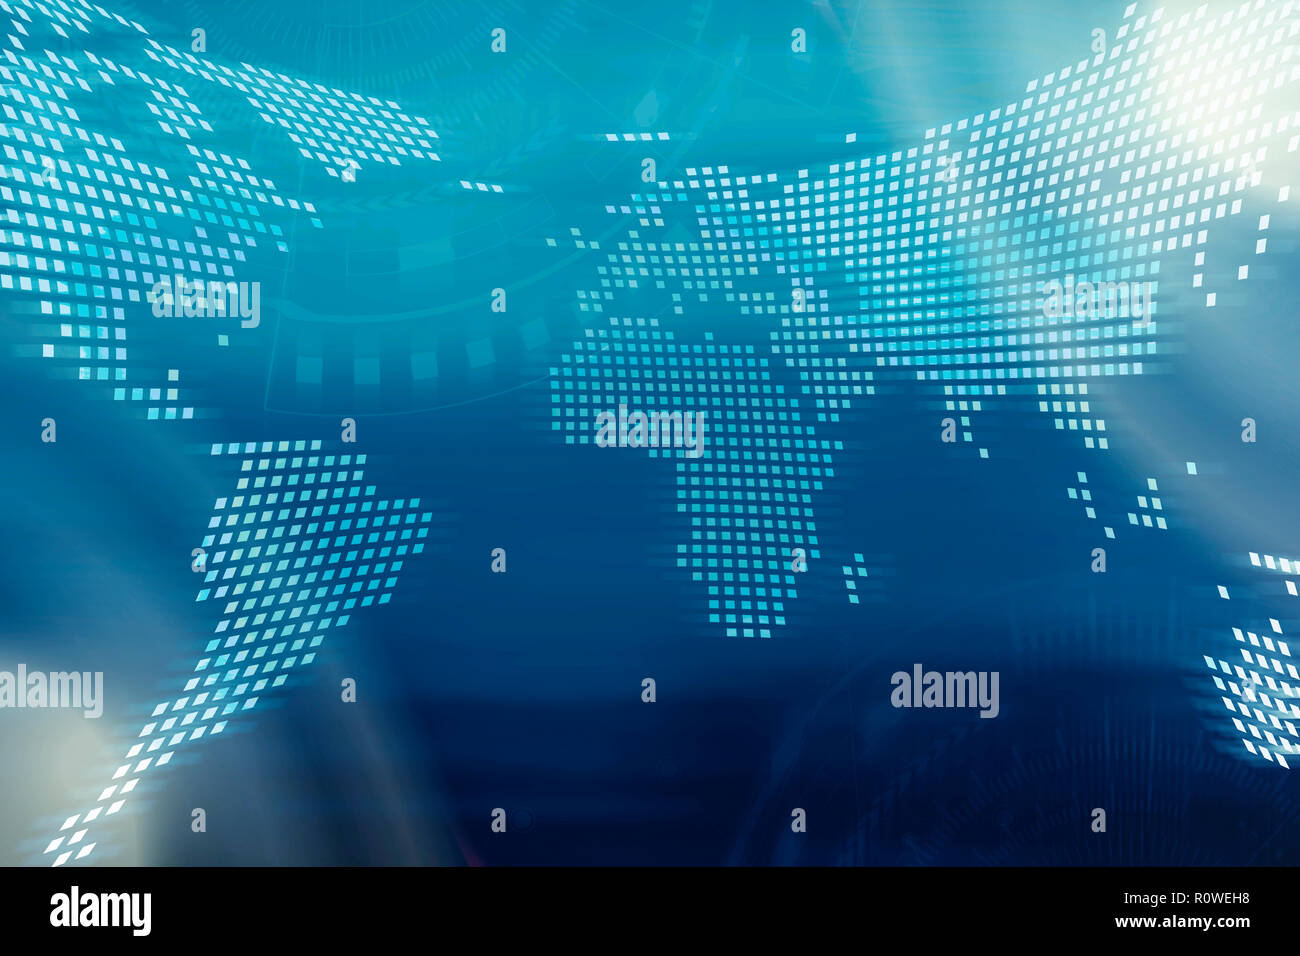 Technologie Hintergrund. Digitale Landkarte mit Technologie Symbole auf unscharfen blauen Hintergrund. Stockfoto